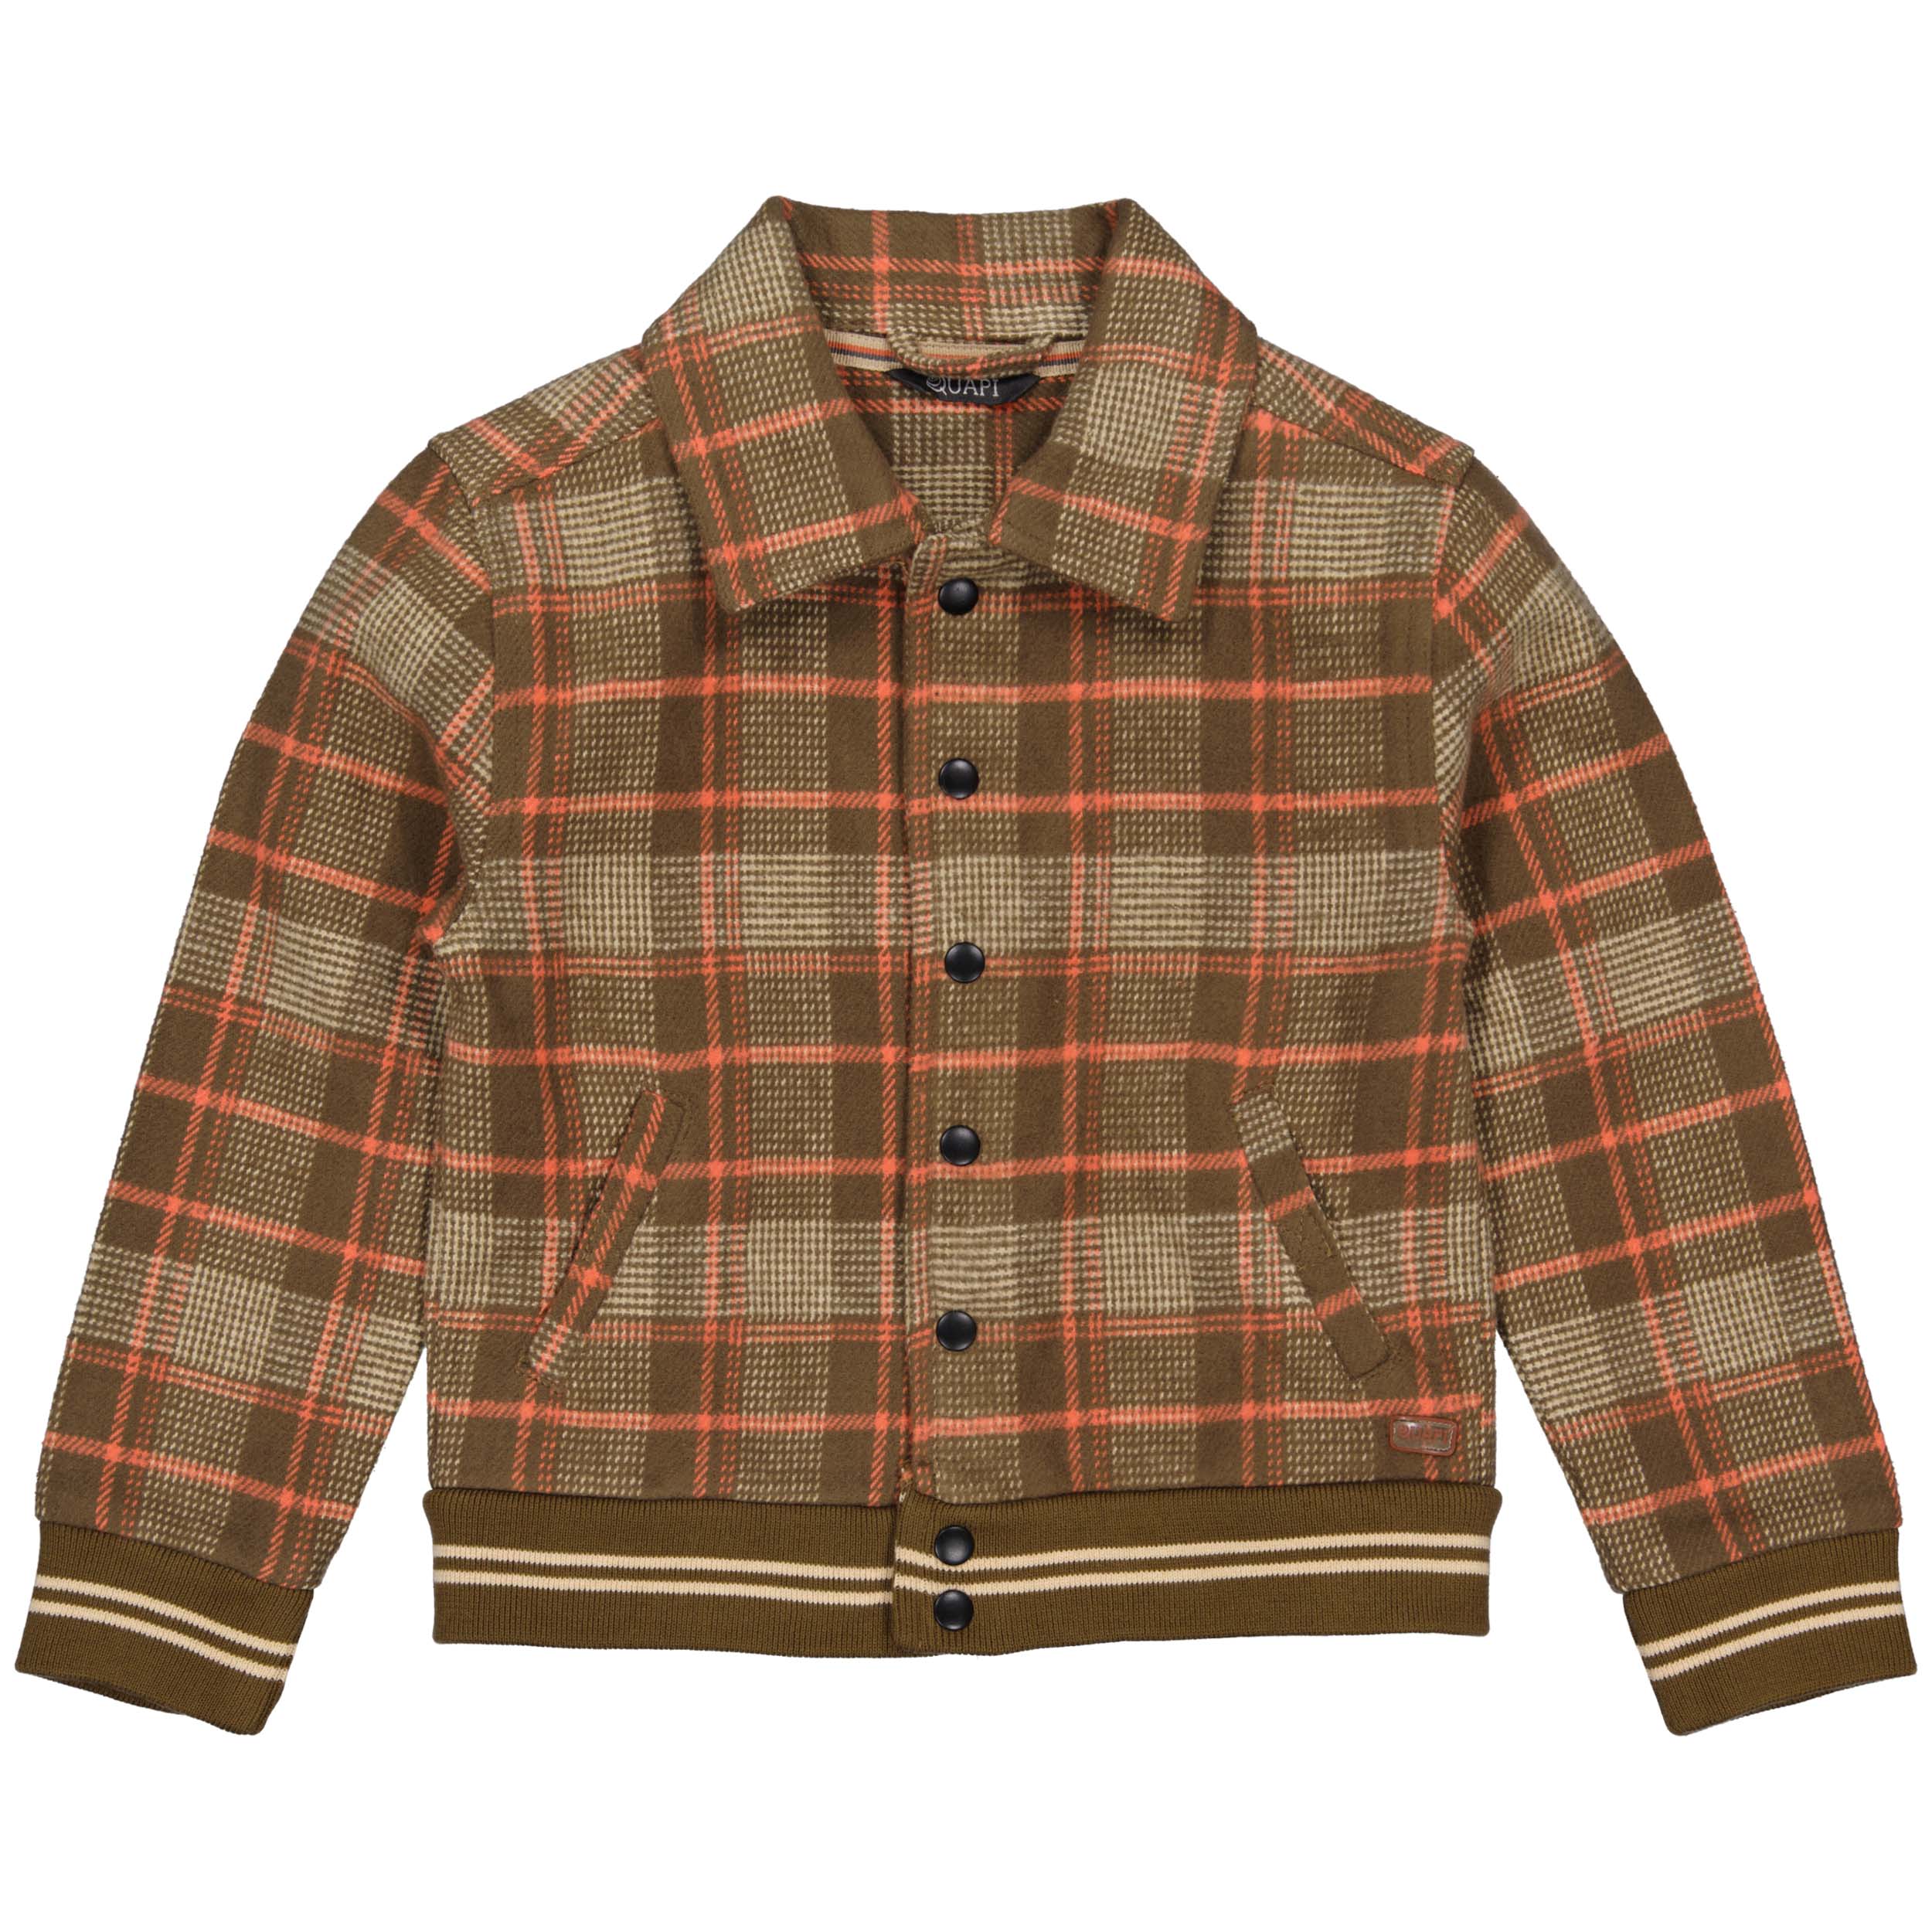 Jongens Sweater ANNOQW231 van Quapi in de kleur AOP Brown Check in maat 134-140.